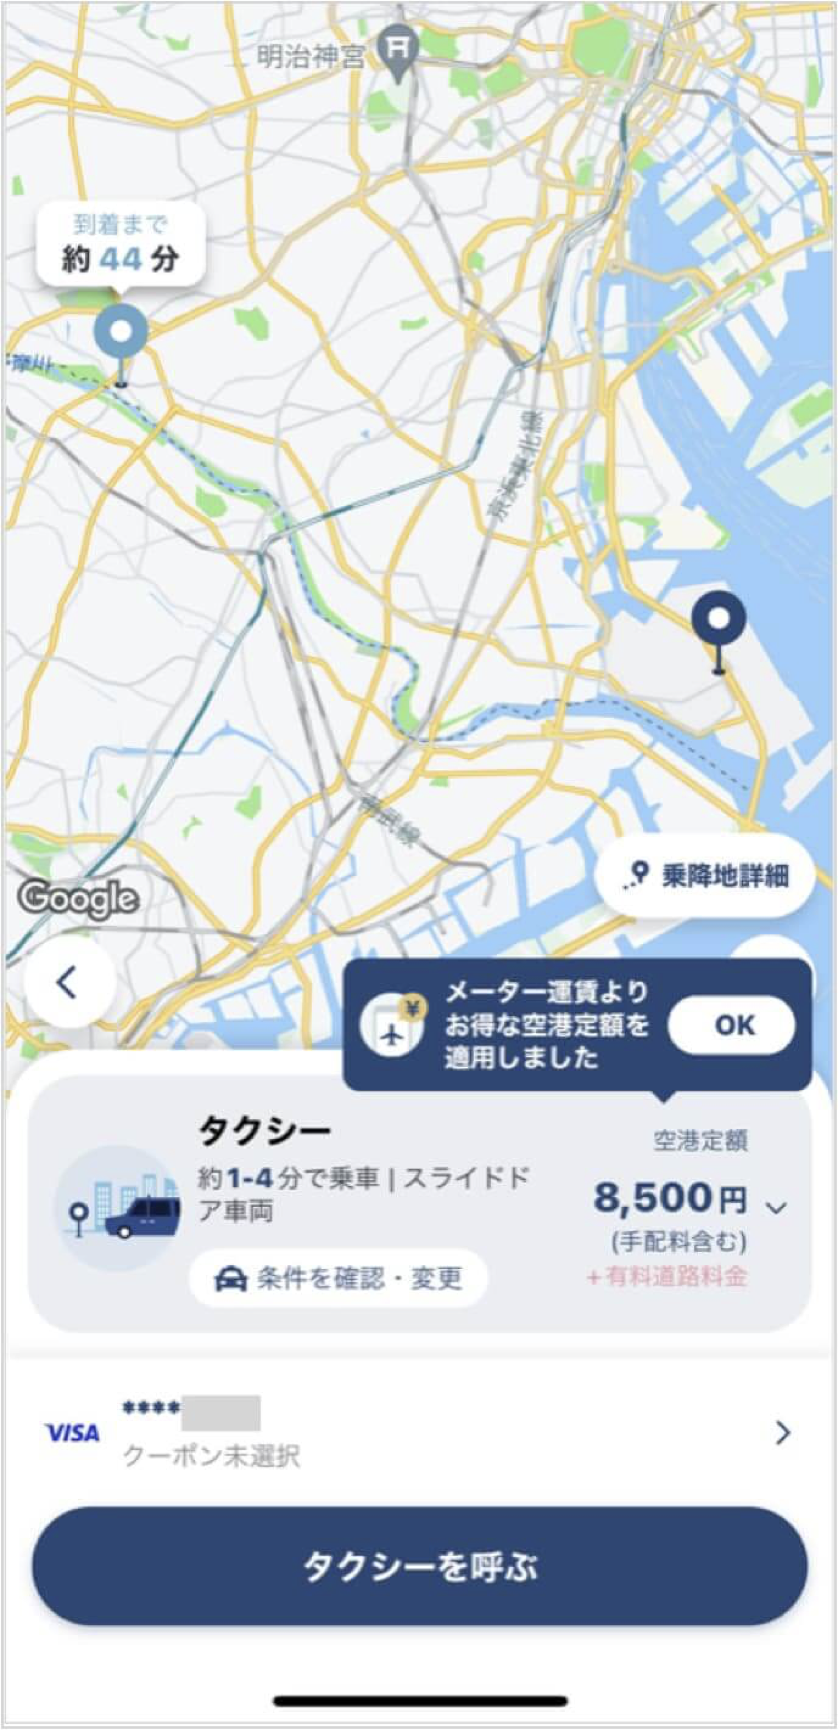 羽田空港から新宿までのタクシー料金・所要時間まとめ